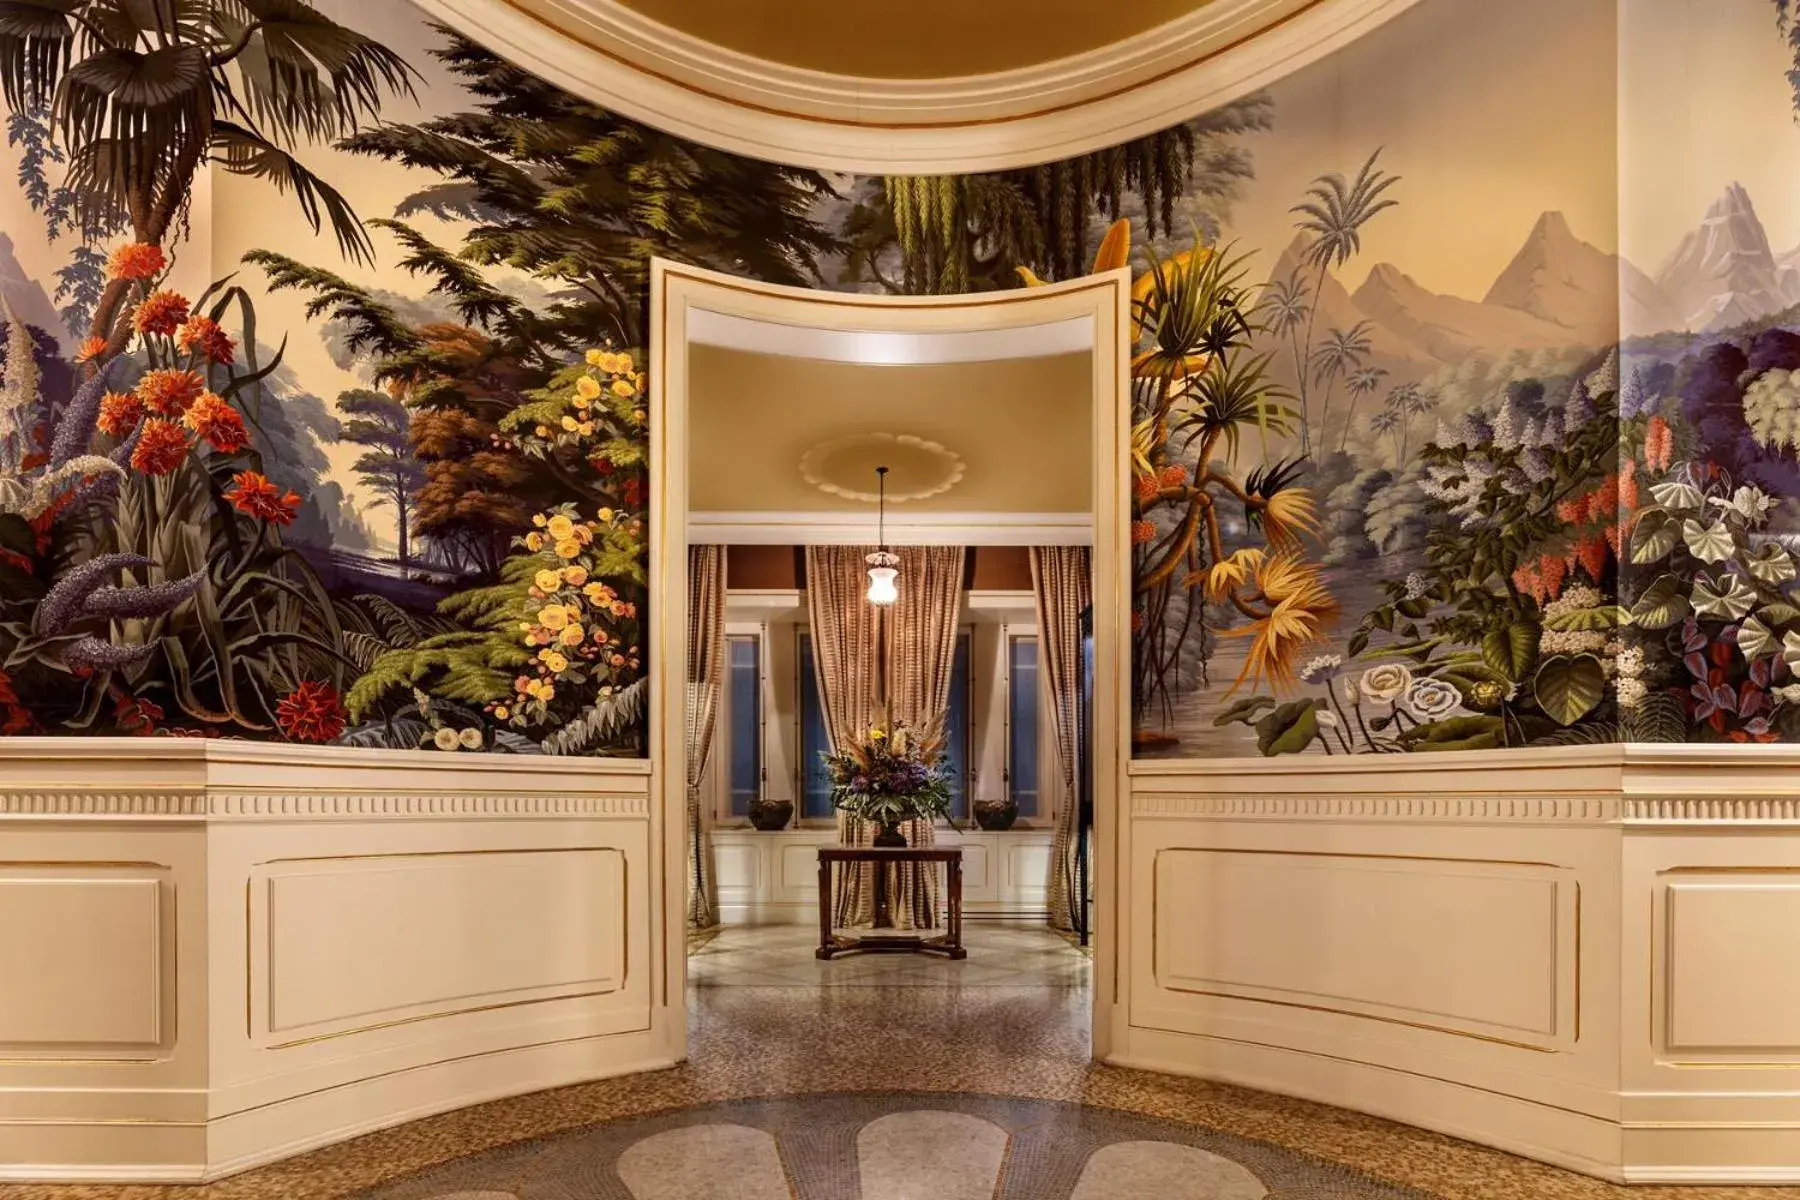 Lobby or reception, Lobby/Reception in Vidago Palace